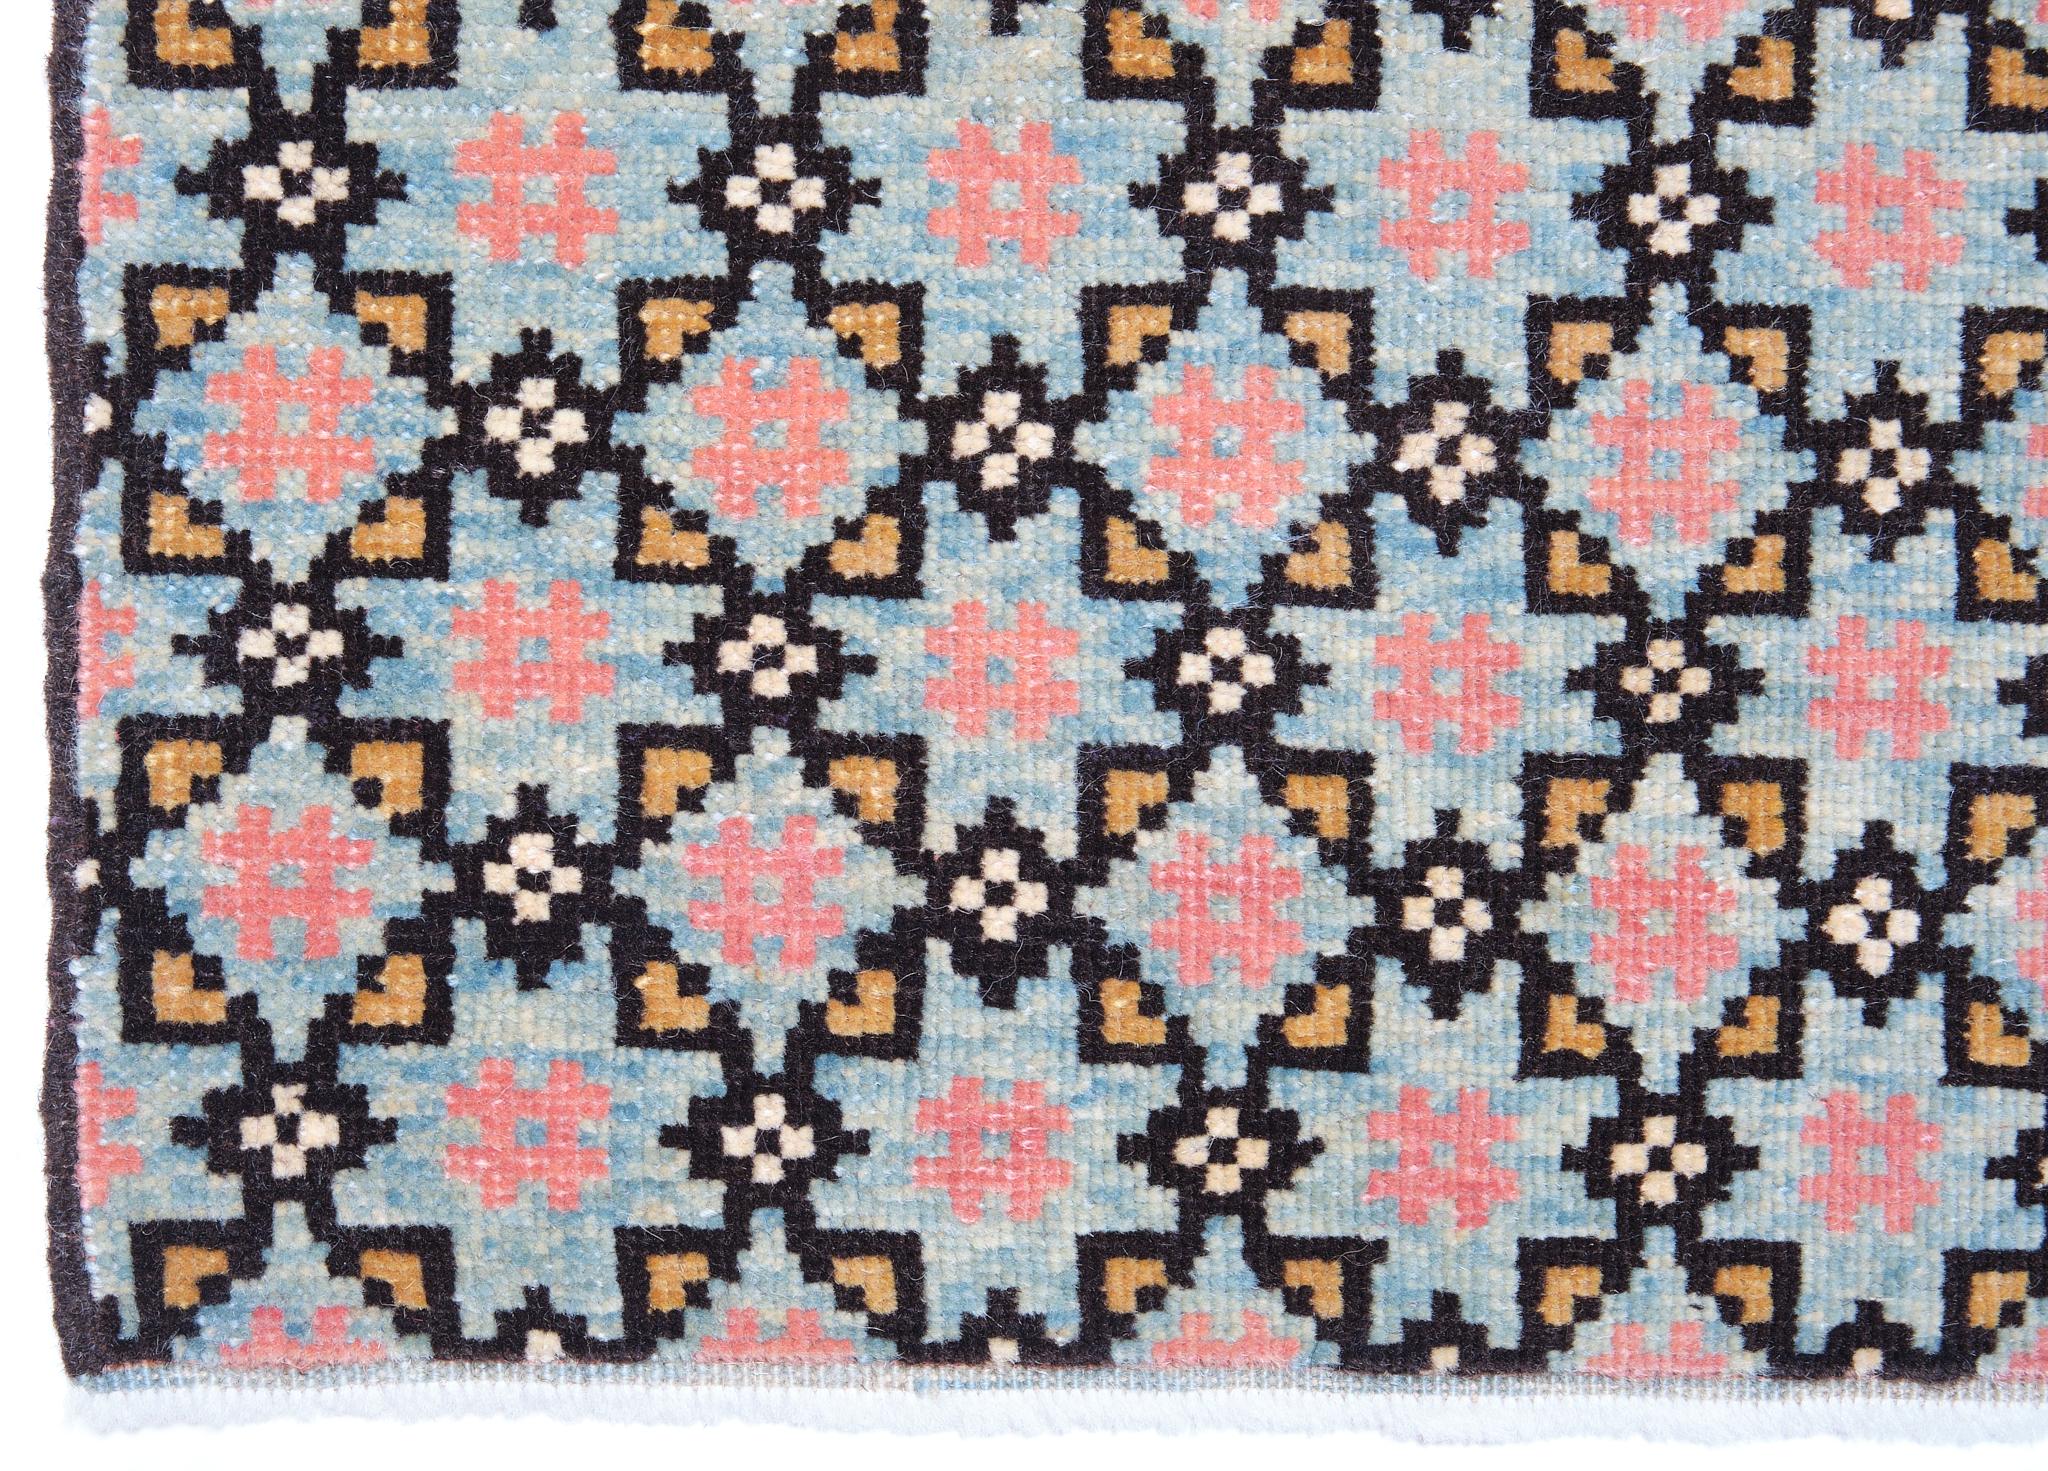 La source du tapis provient du livre Turkish Carpets from the 13th - 18th centuries, Ahmet Ertuğ, 1996 pl.16. Ce tapis du XVe siècle provient de la mosquée d'Ulu, dans la région de Divrigi Sivas, en Anatolie centrale. La période seldjoukide marque